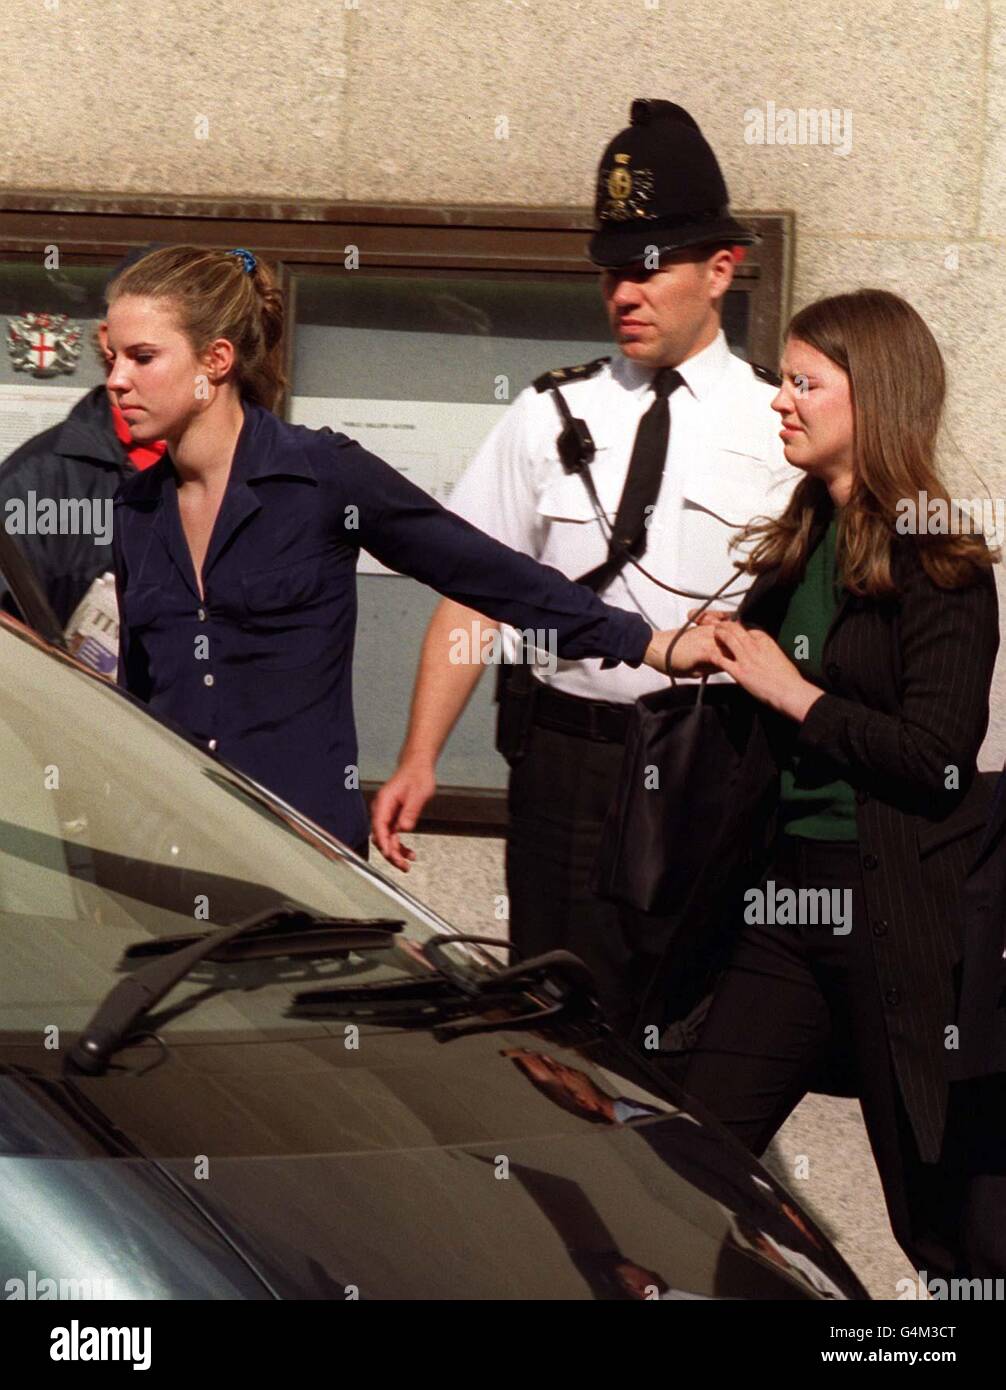 Alexandra (à gauche) et Victoria Aitken, les filles de l'ancien ministre conservateur disgracié Jonathan Aitken, quittant le Old Bailey de Londres après que leur père ait été emprisonné pendant 18 mois après avoir admis le parjure et perverti le cours de la justice. Banque D'Images